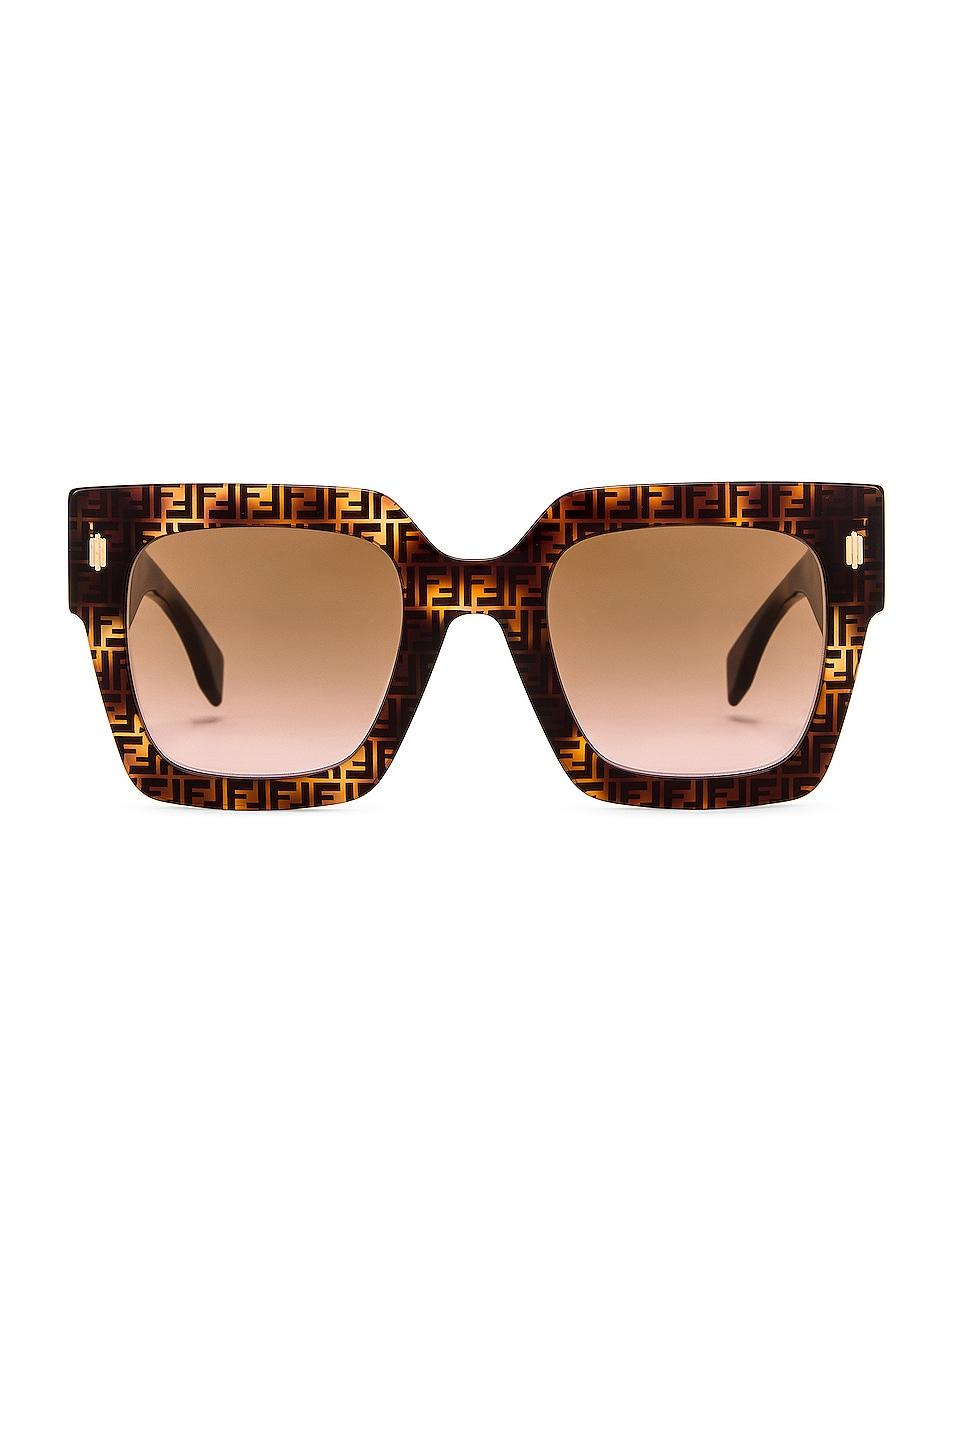 Fendi Square Sunglasses in Brown | Lyst